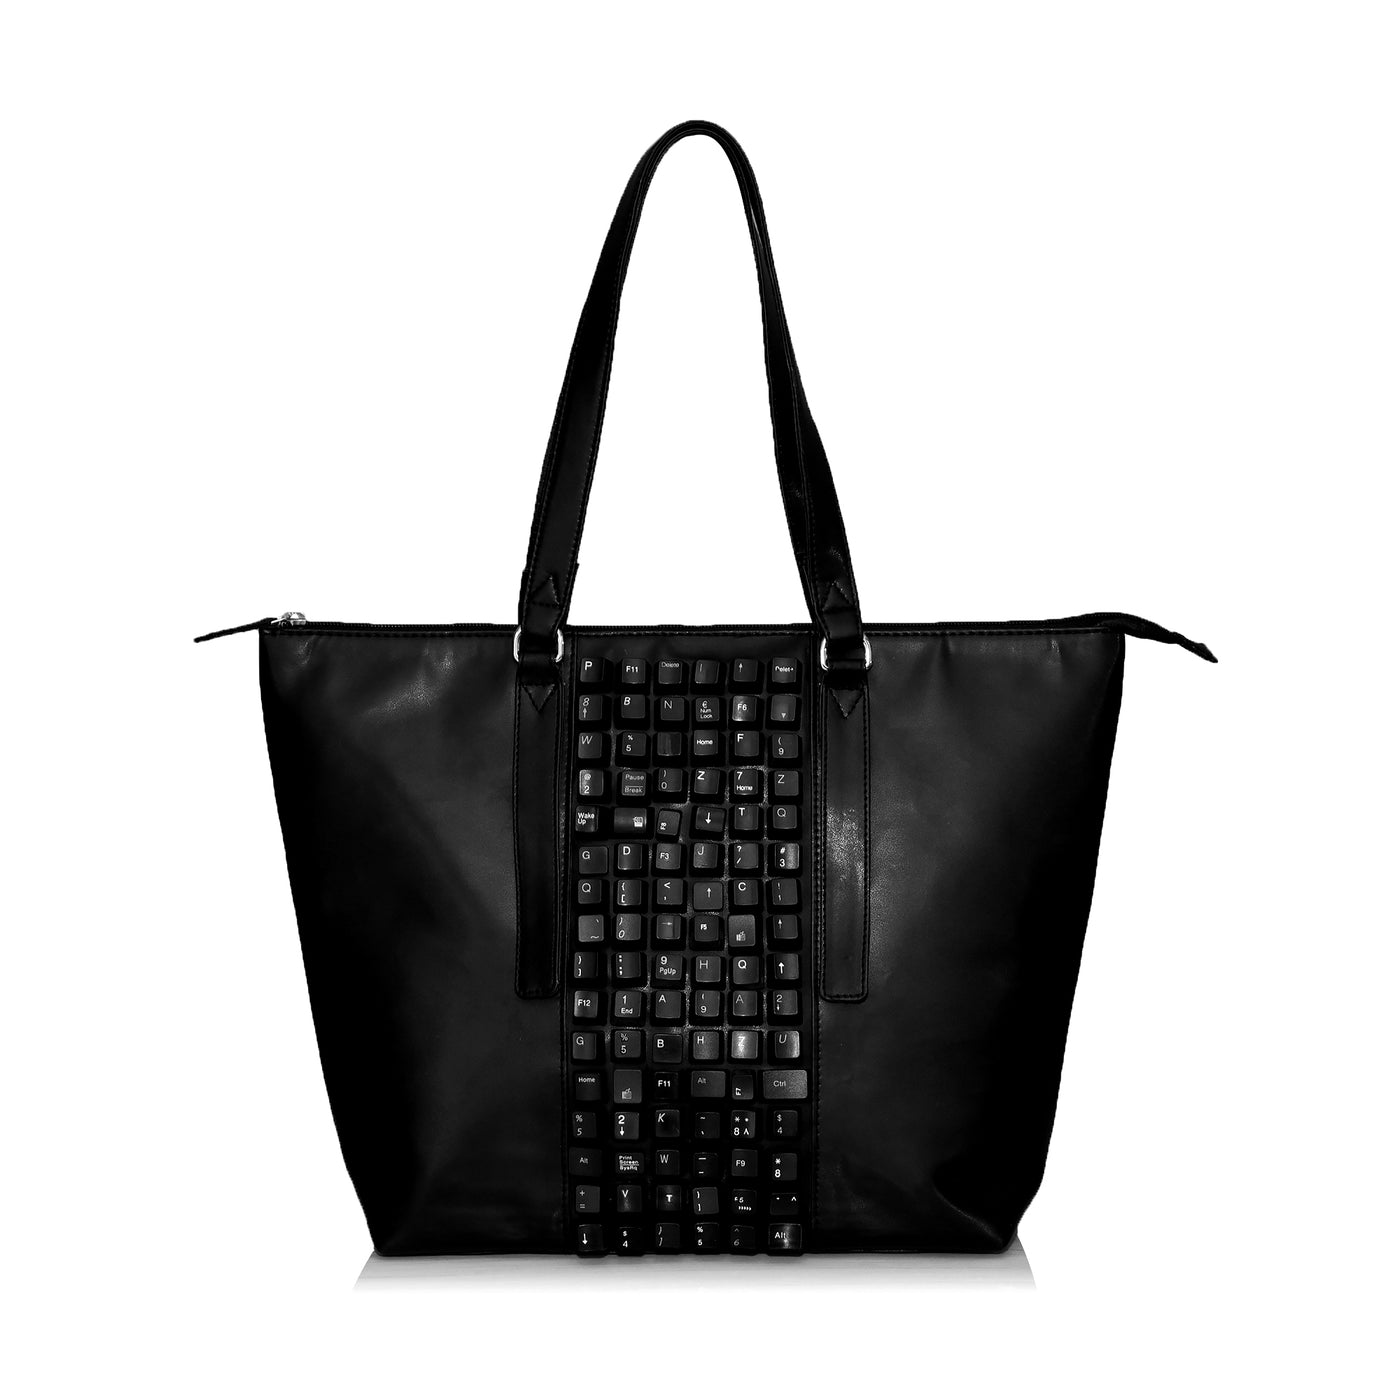 Electronic Keyboard Handbag